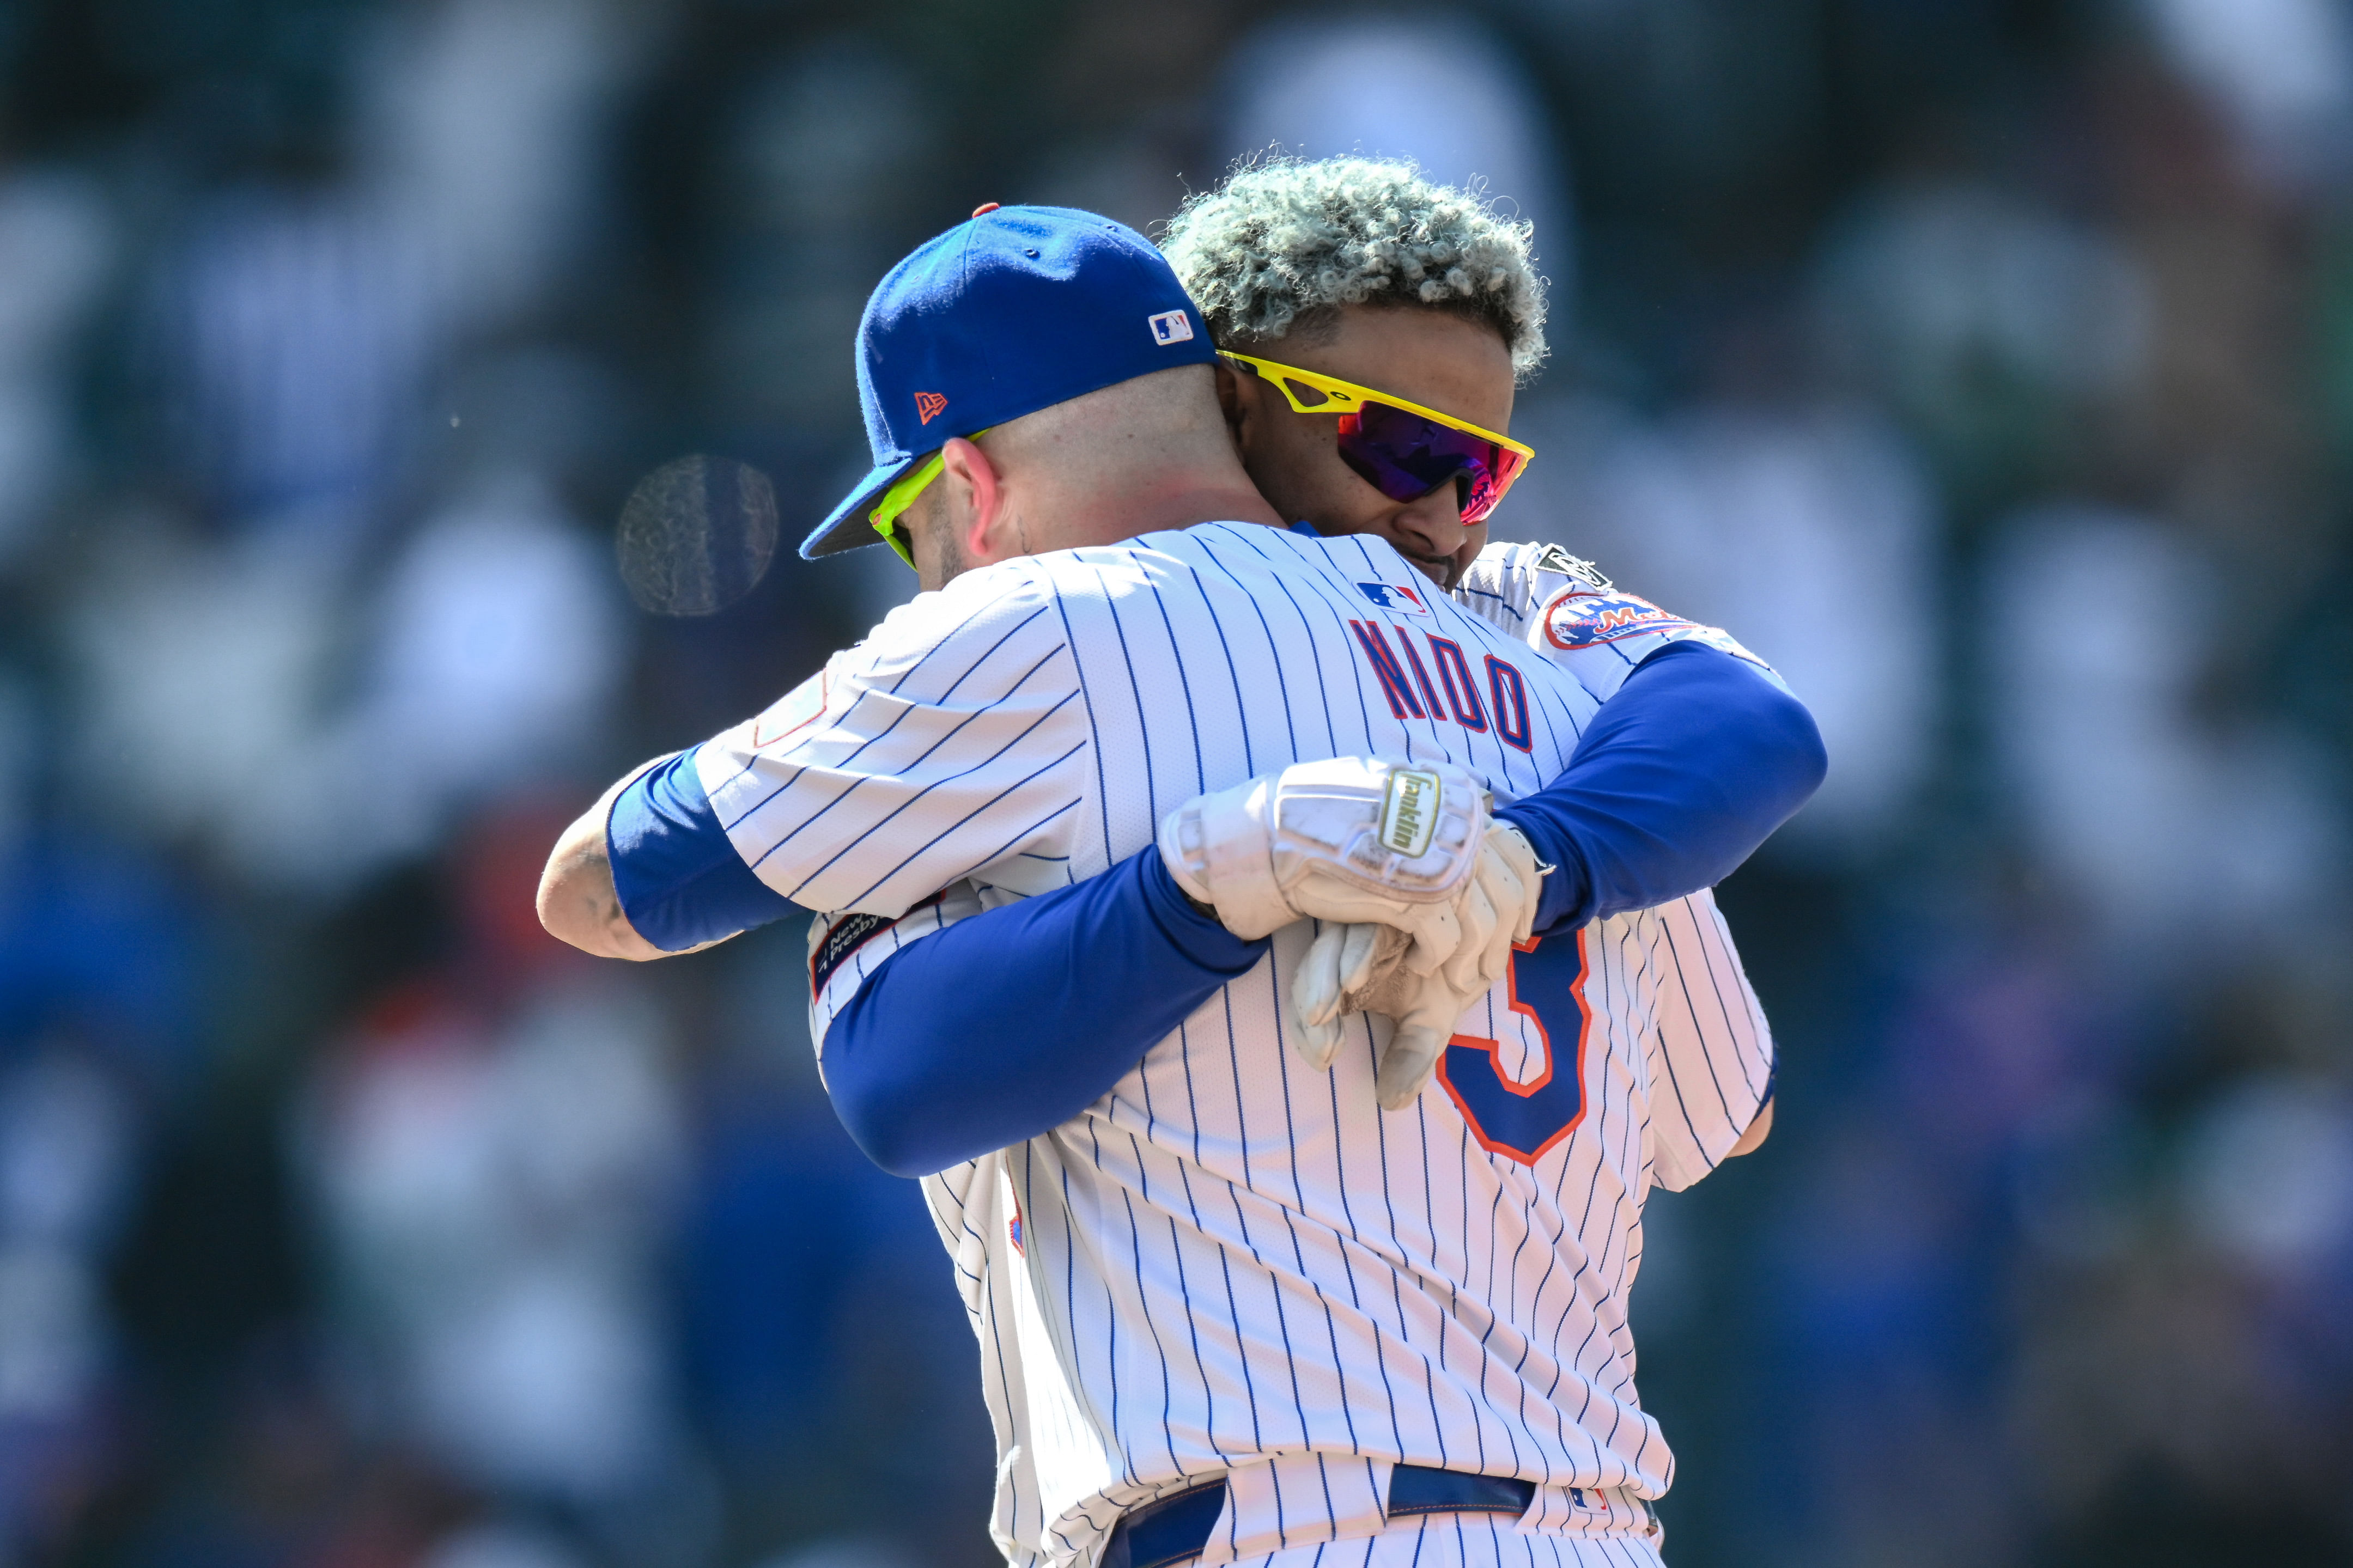 New York Mets - Tomas Nido and Francisco Lindor (Image via USA Today)